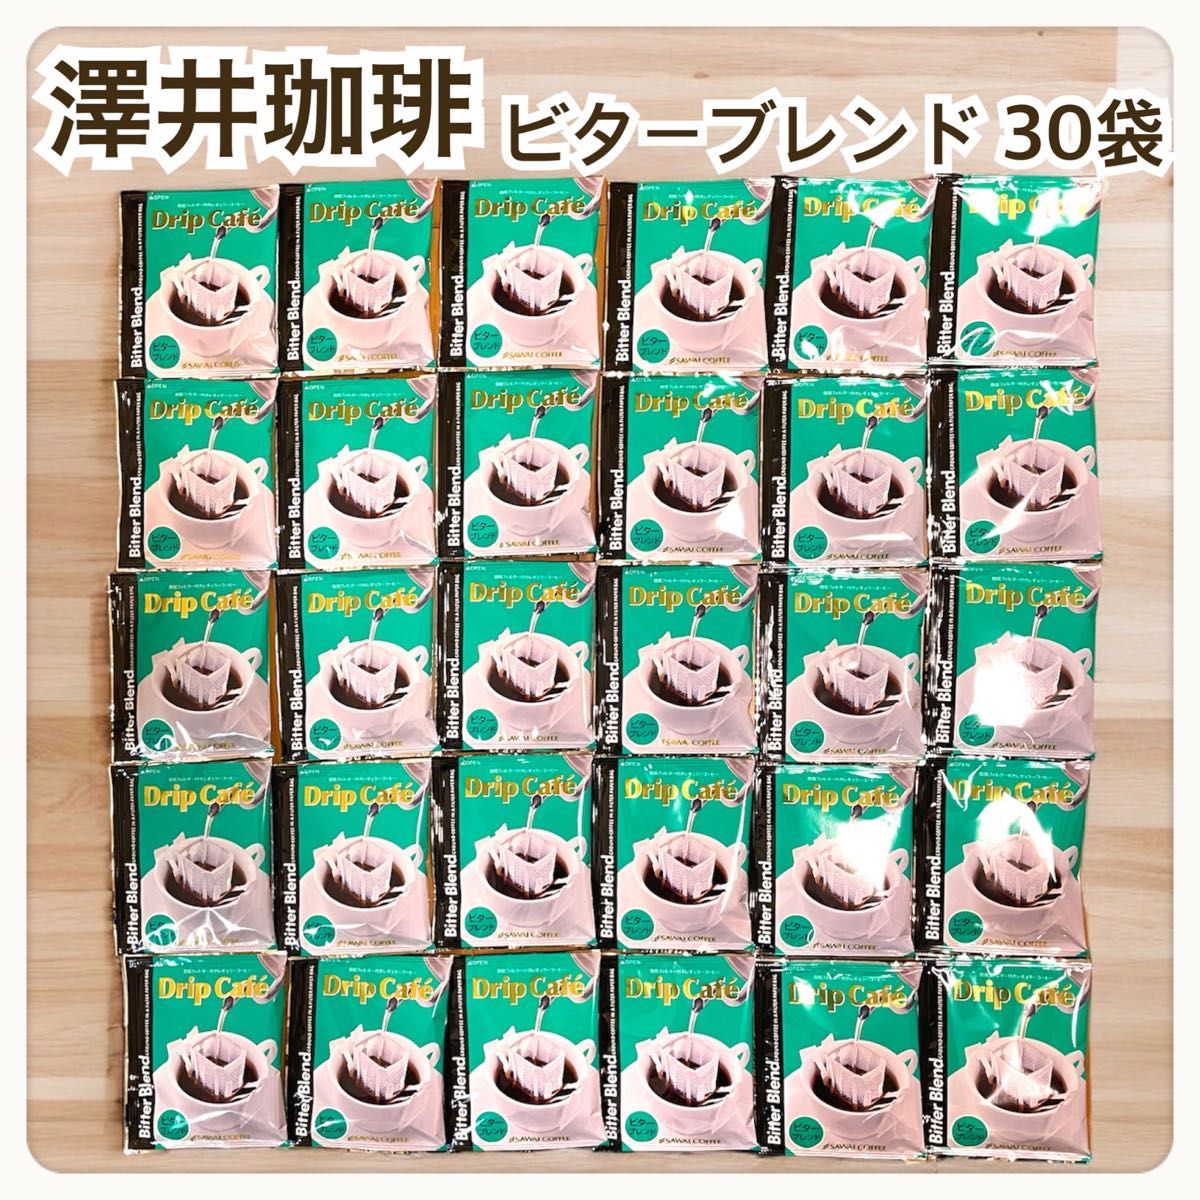 ビターブレンド 澤井珈琲 ドリップ コーヒー 30袋セット